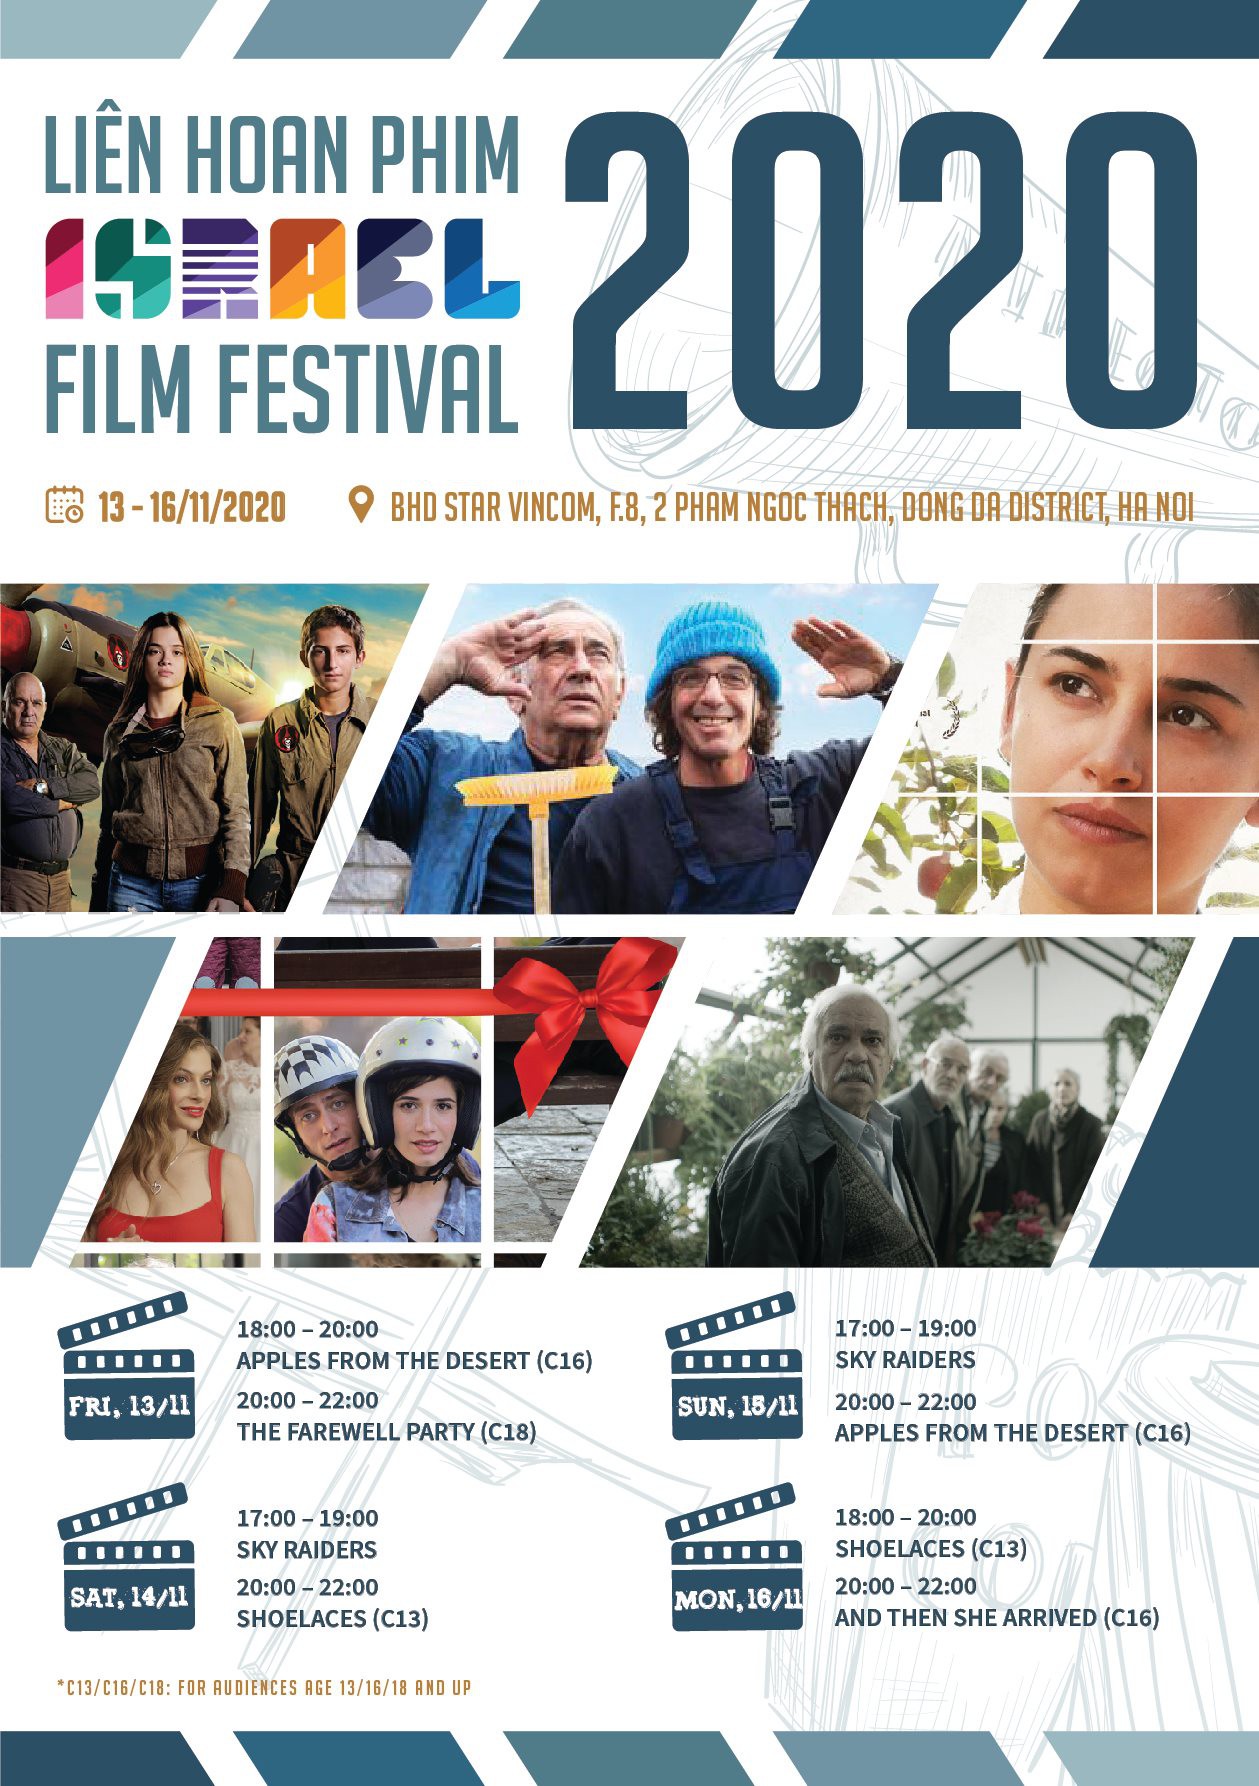 ISRAEL FILM FESTIVAL IN VIETNAM - 2020